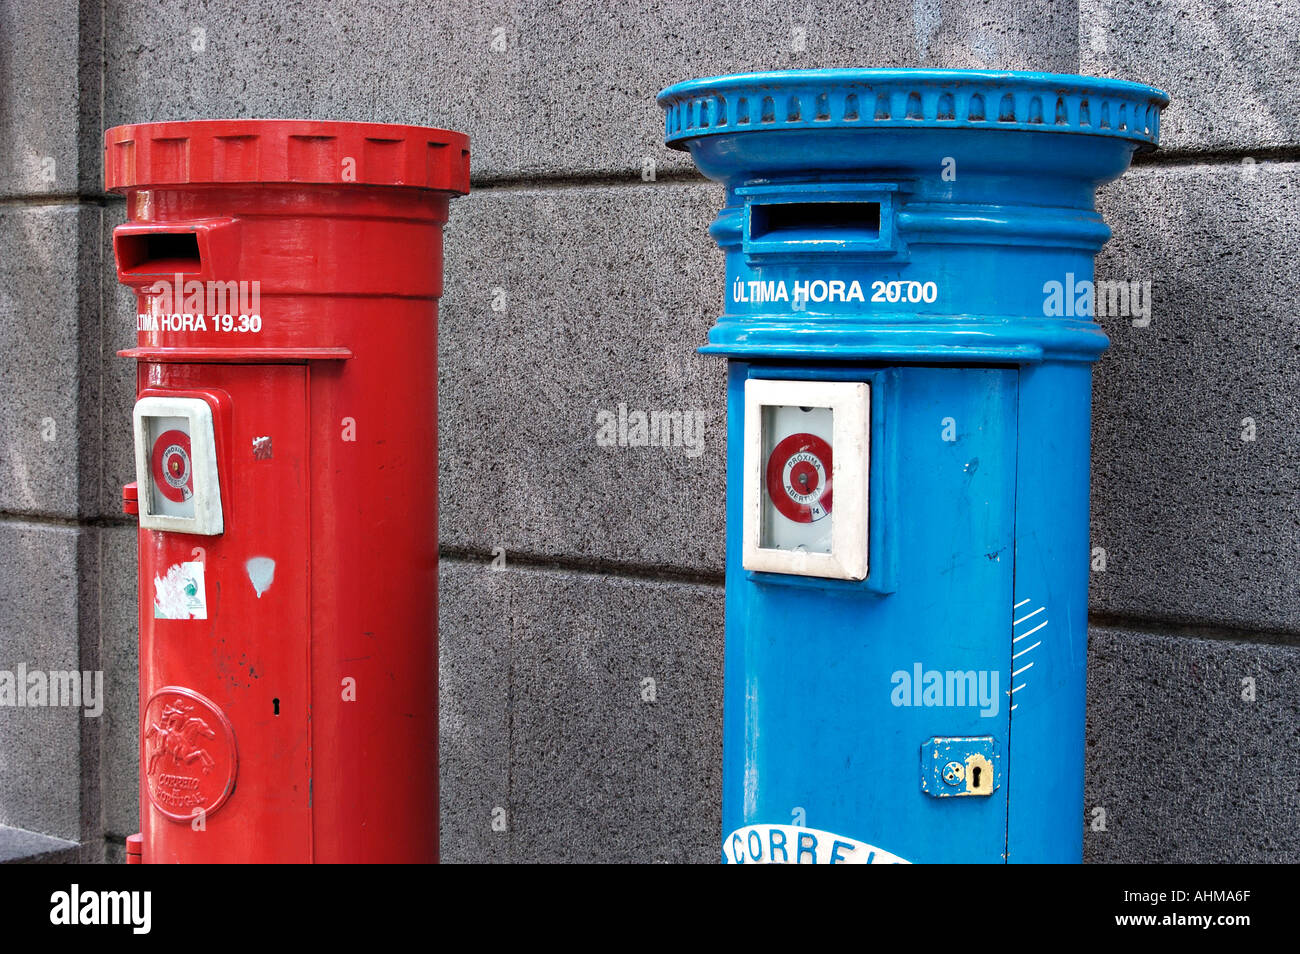 Los buzones de correos de Portugal Fotografía de stock - Alamy